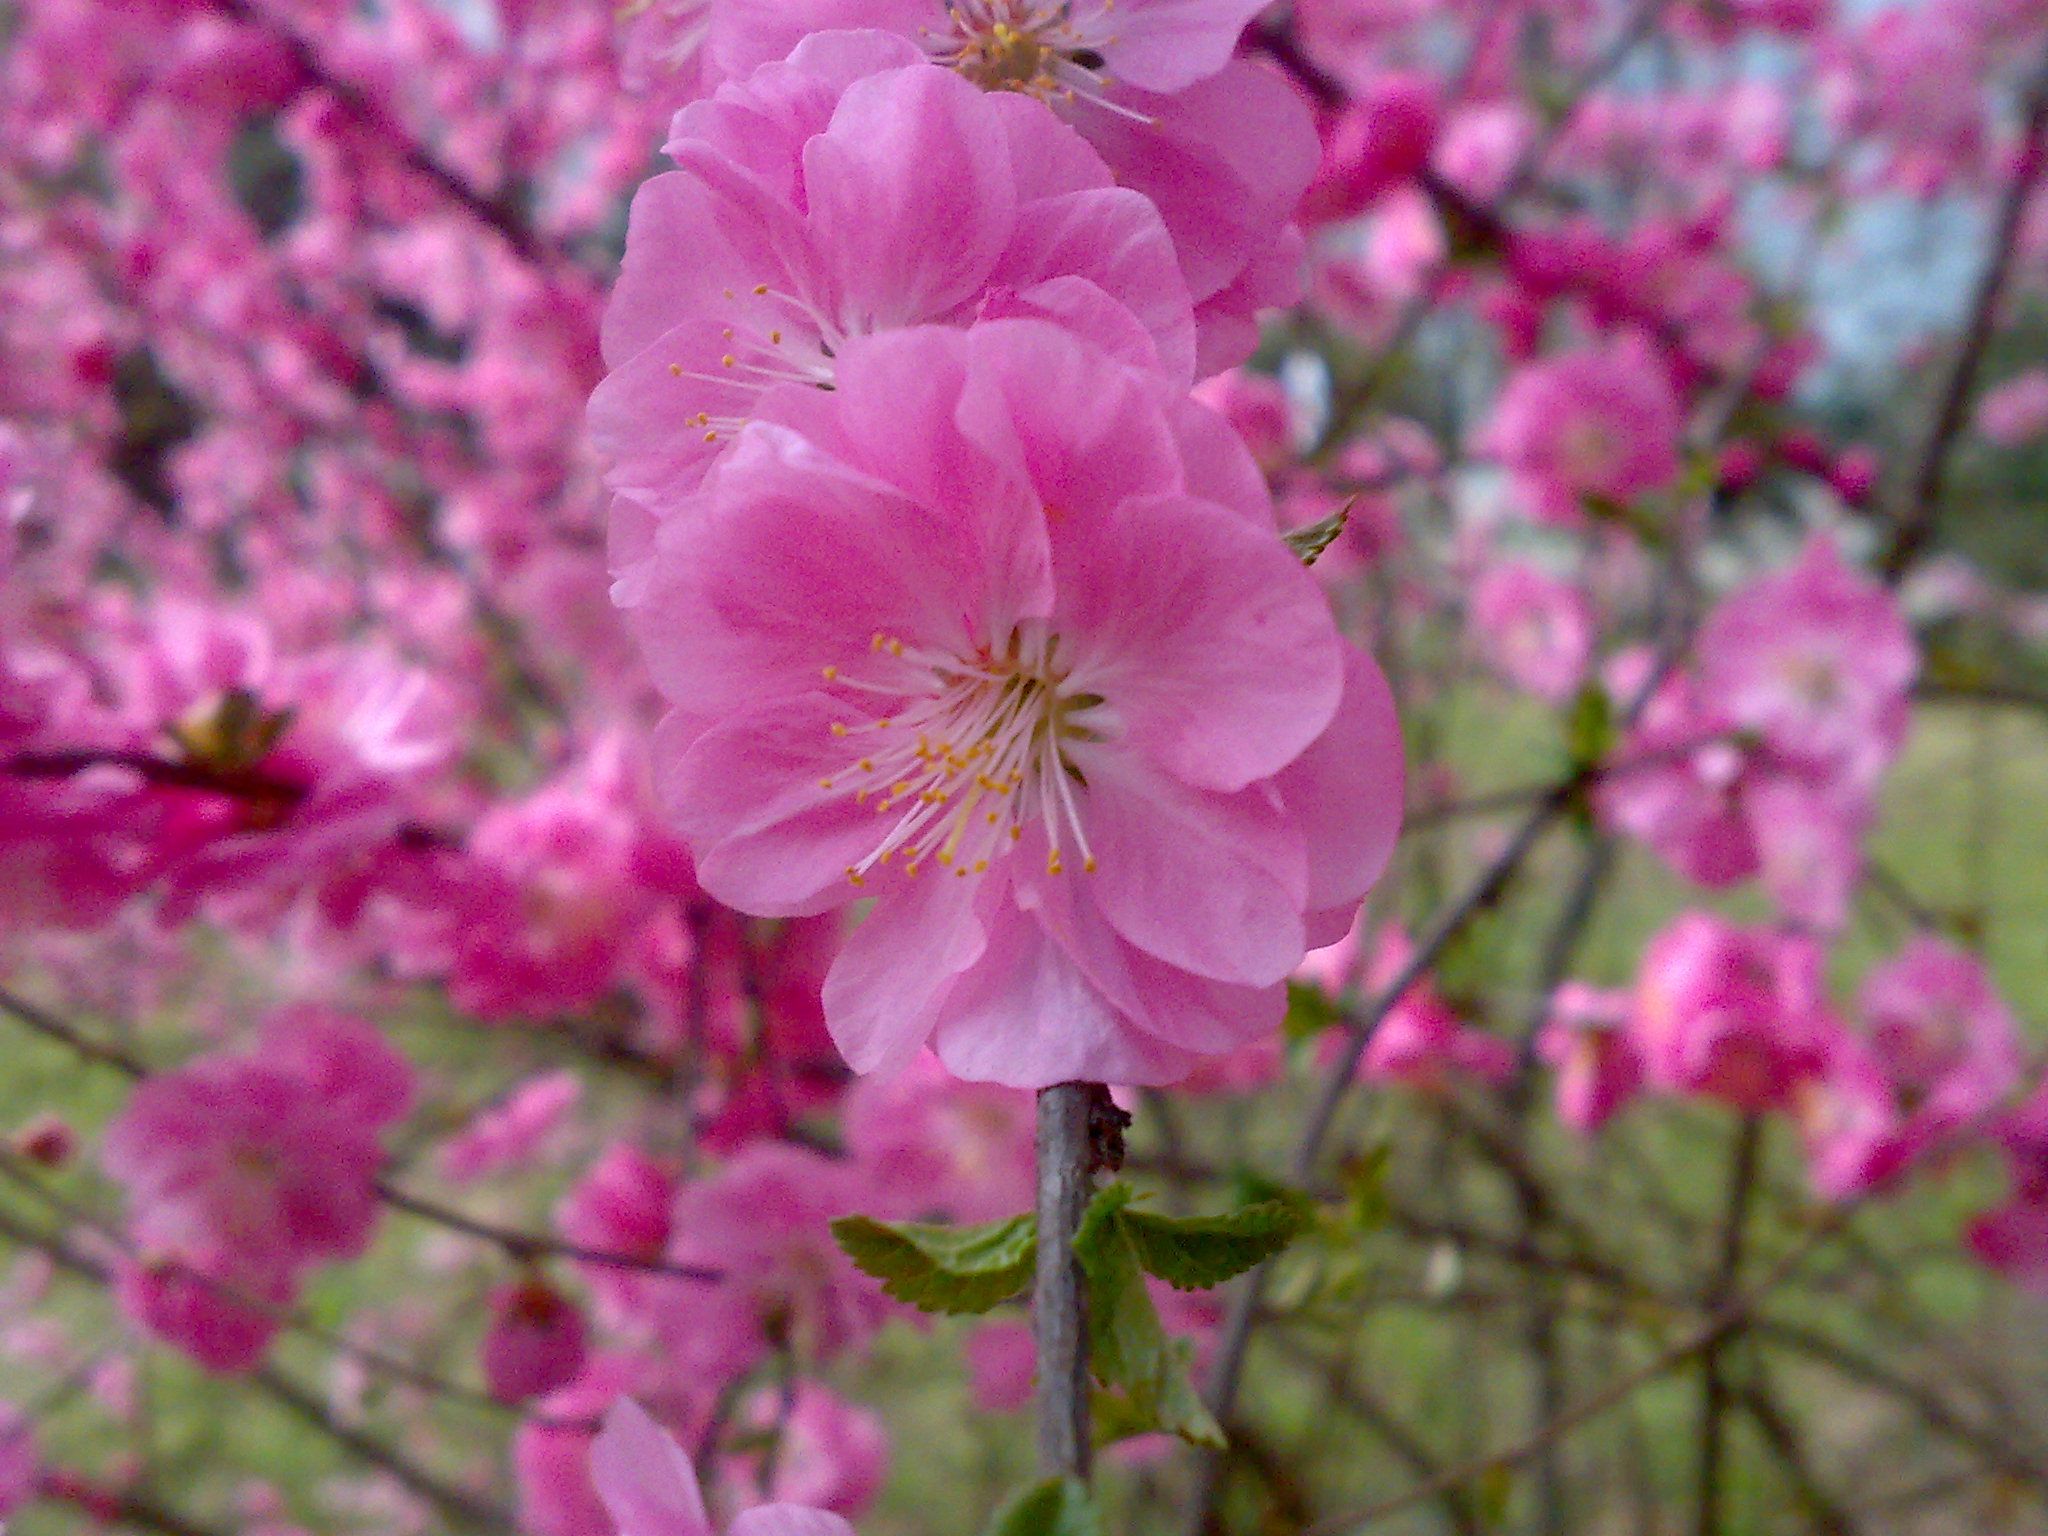 تصویر فوق العاده زیبا و جالب از شکوفه های یاسی هلو